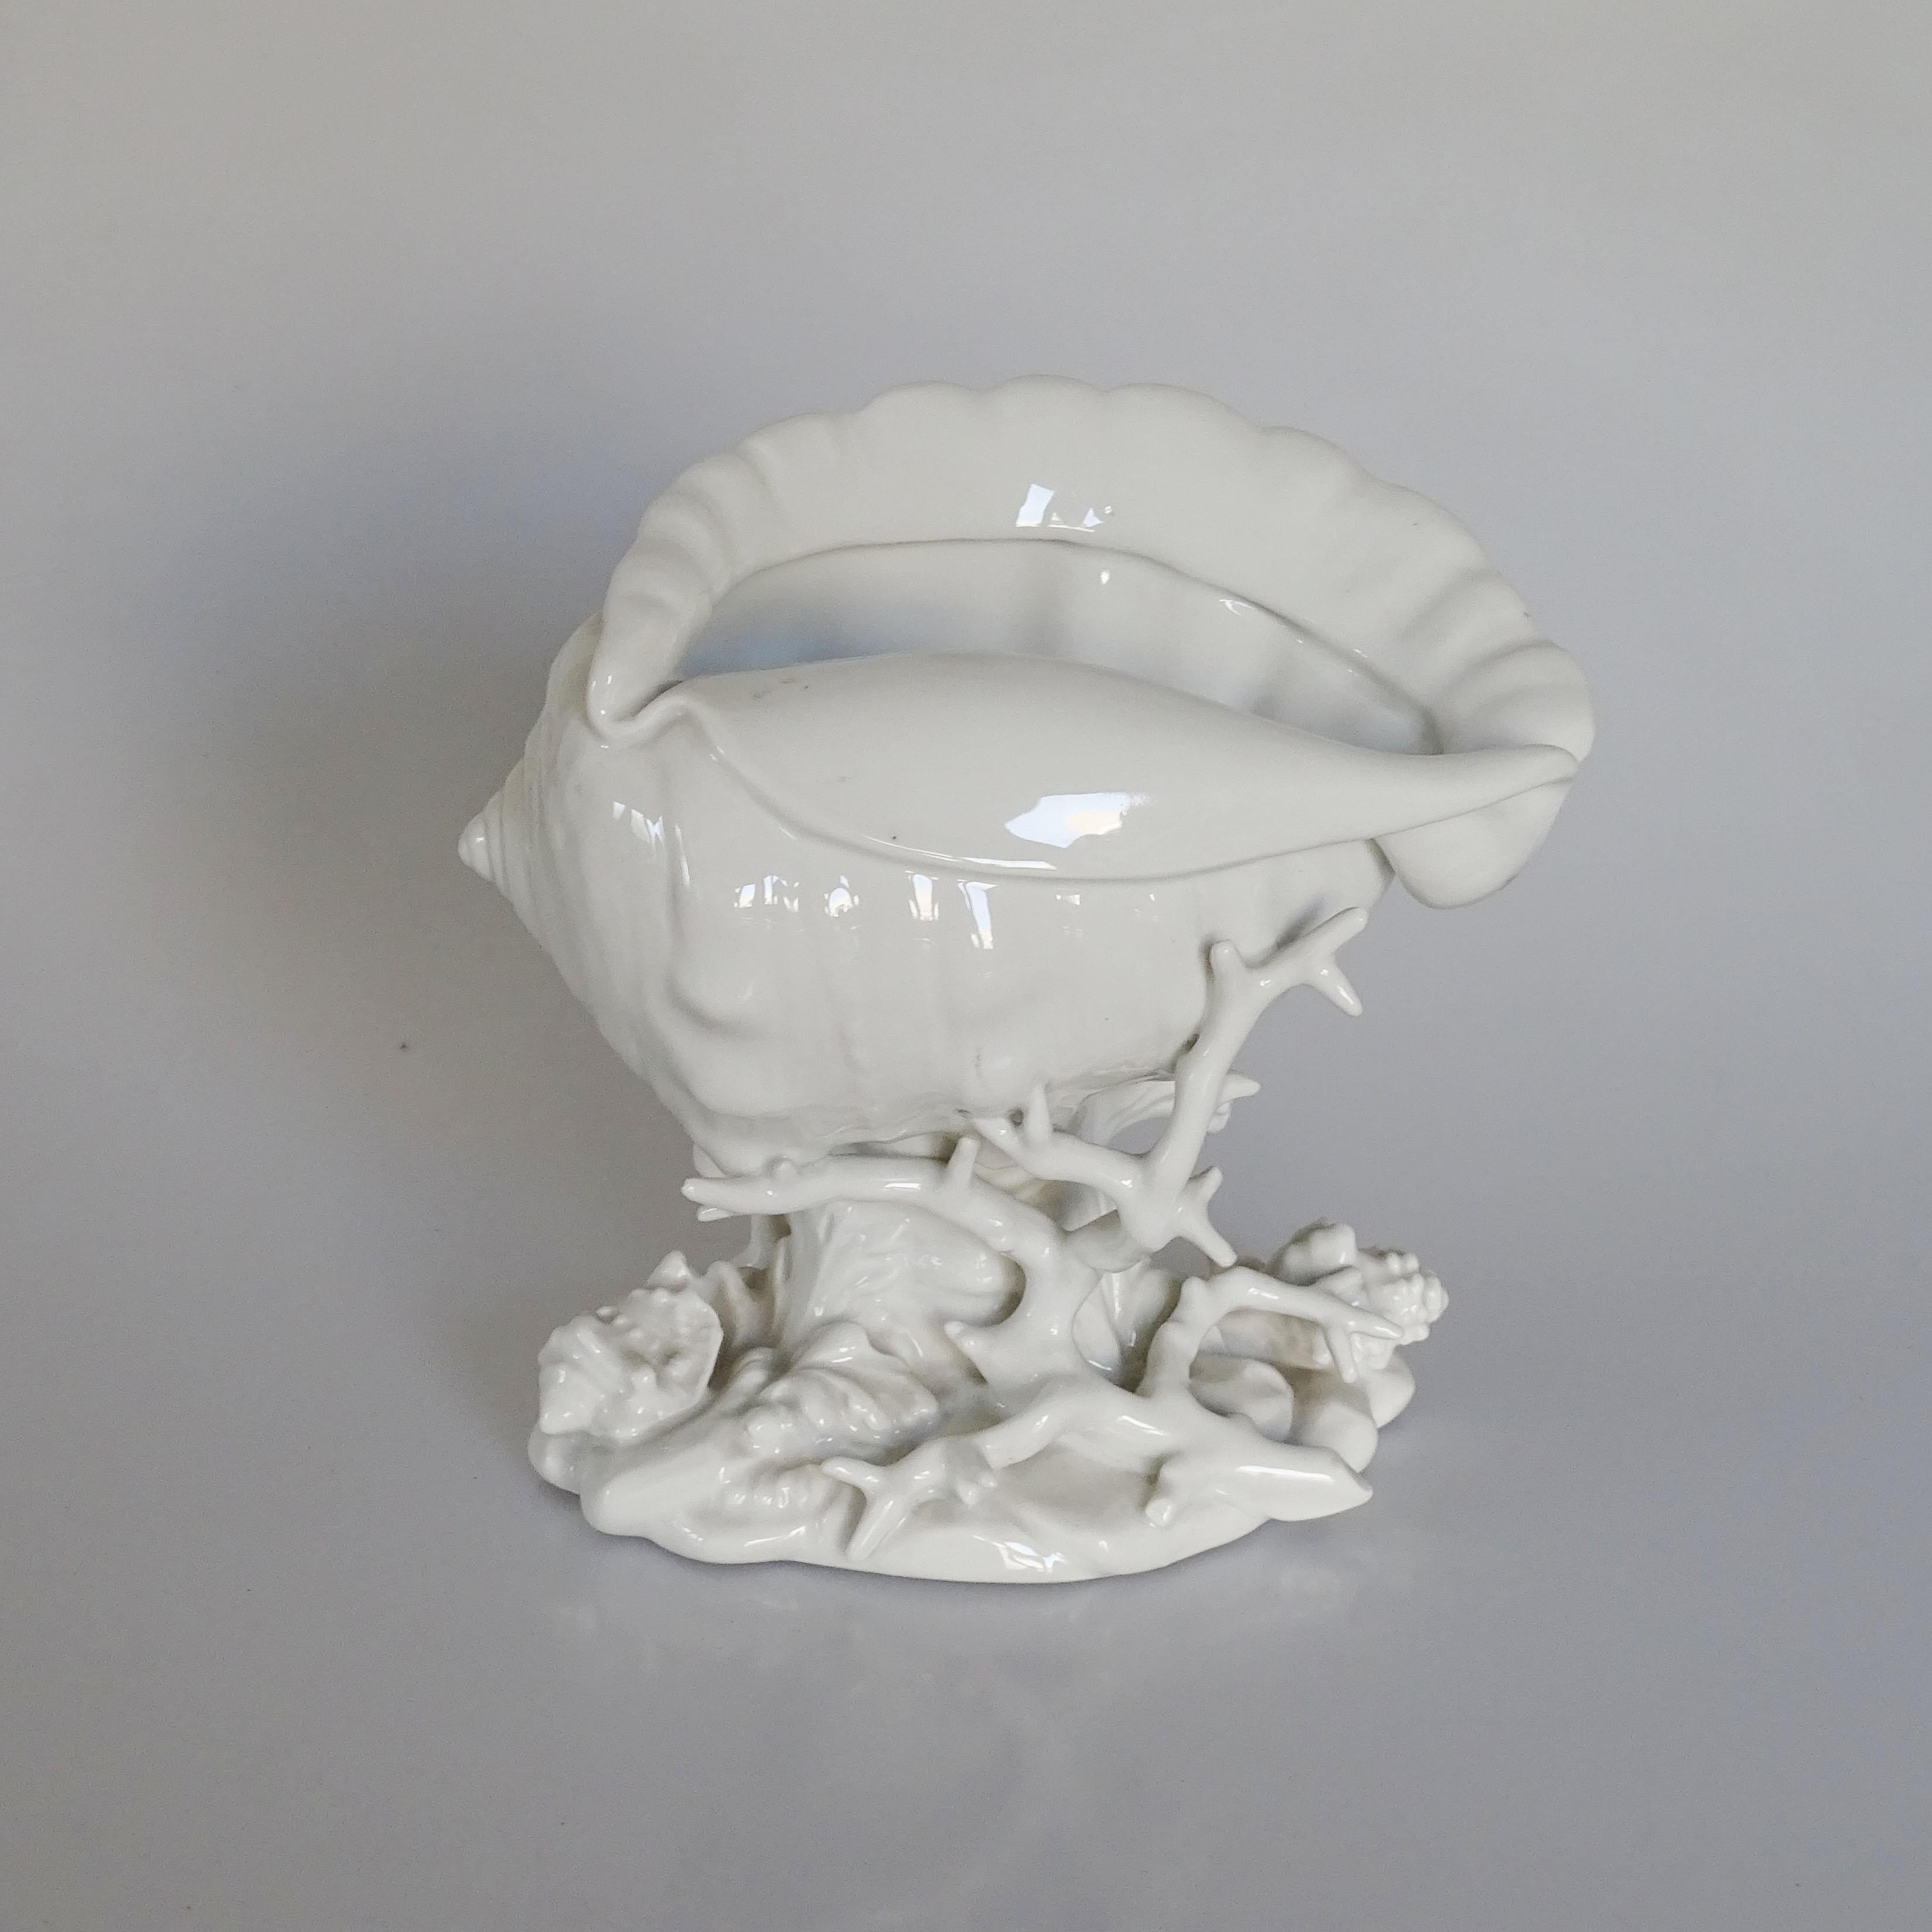 Richard Ginori 1940s white ceramic Shells centrepiece.